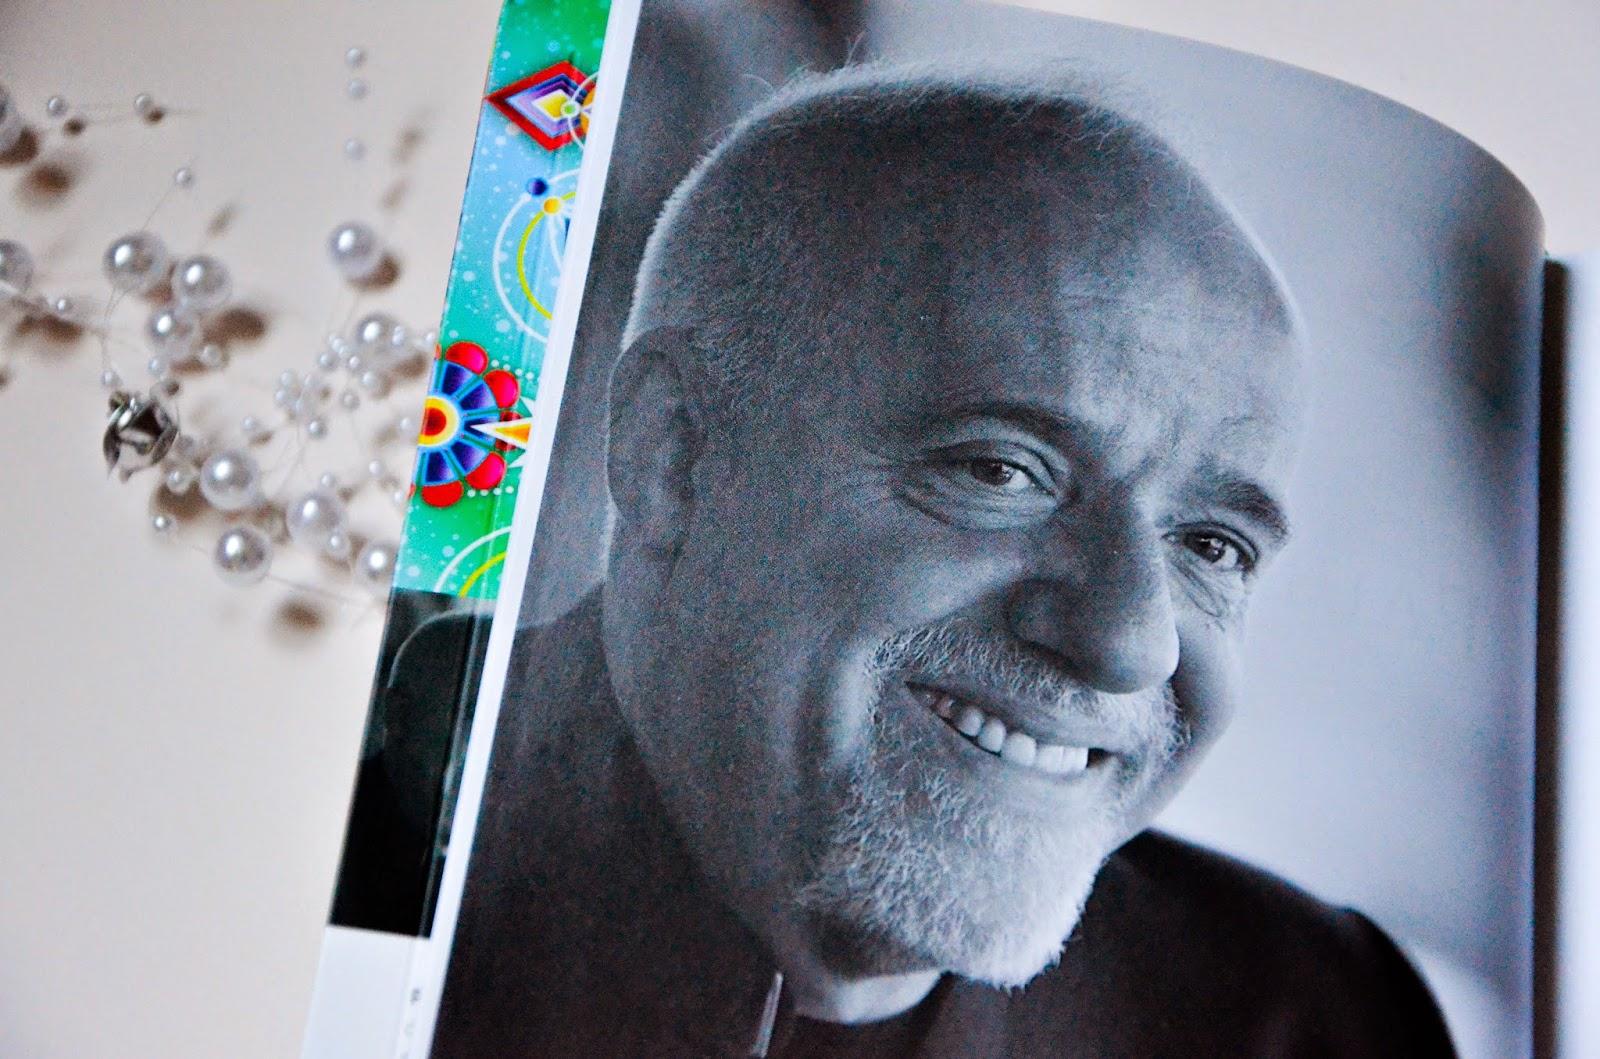 L'agenda 2015 signé Paulo Coelho